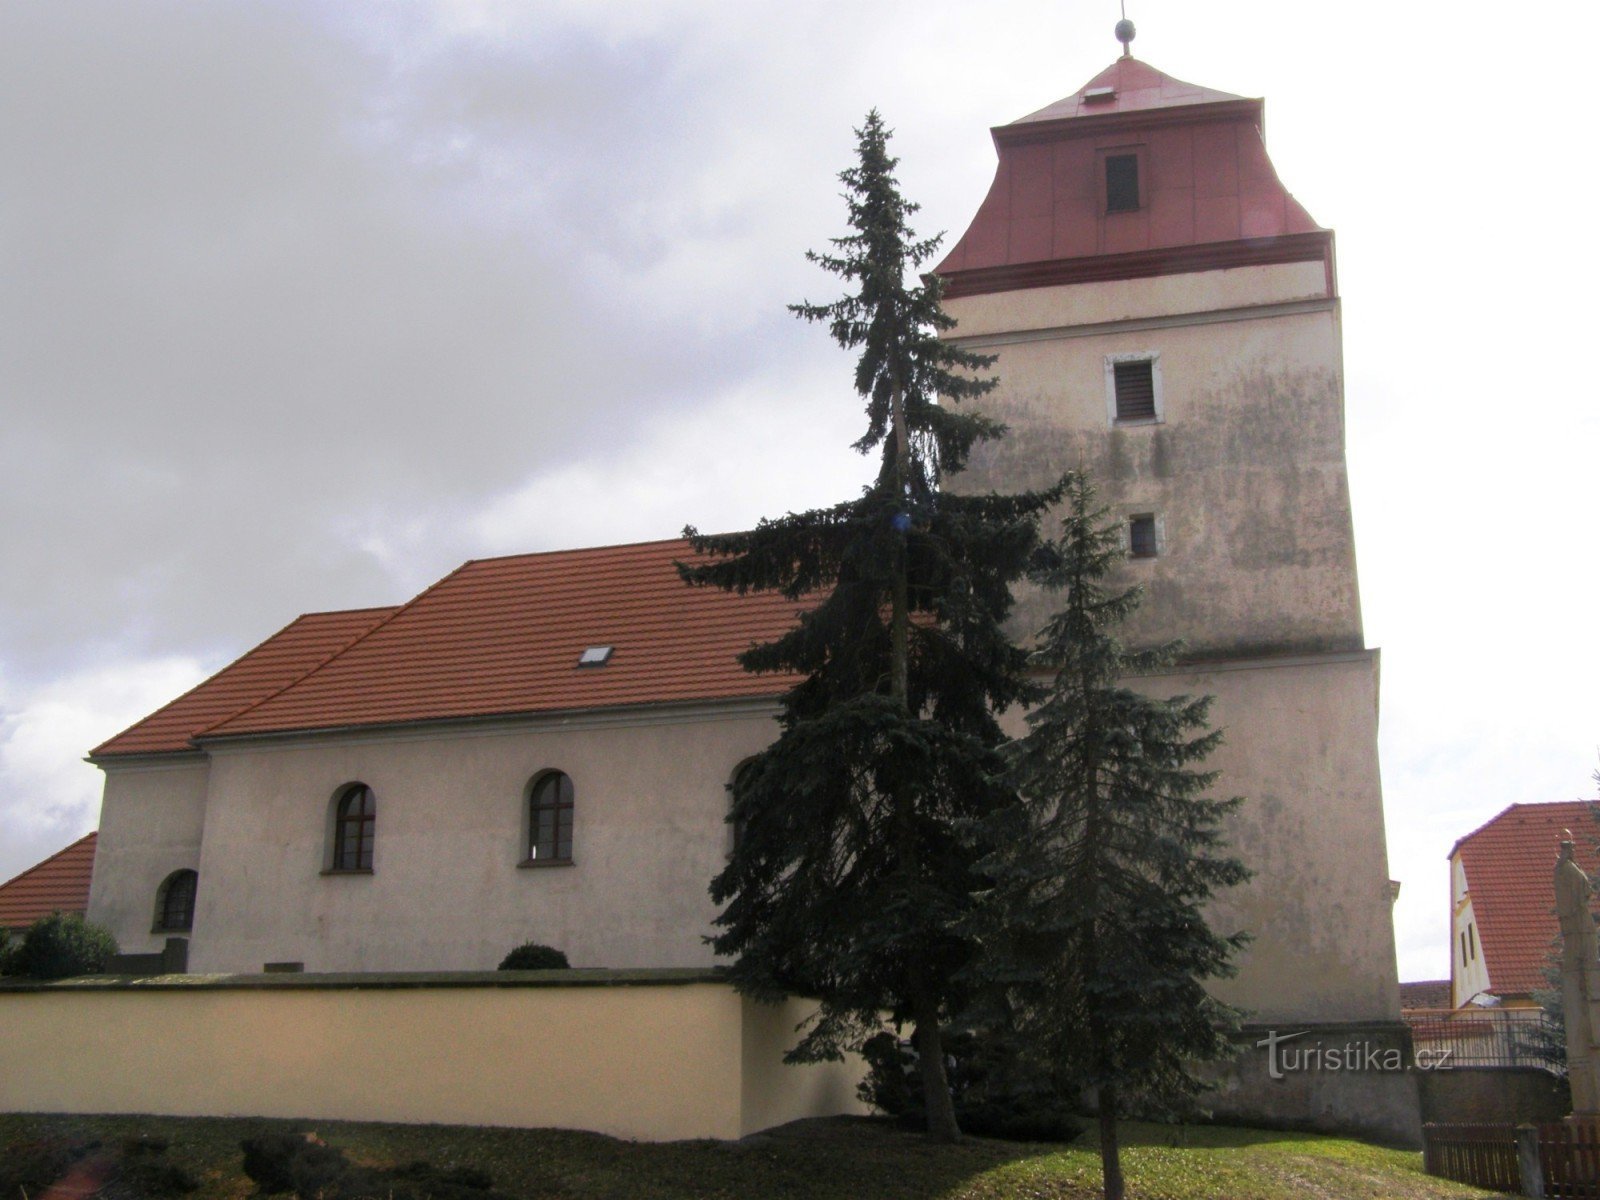 Libřice - église de St. Michaëla